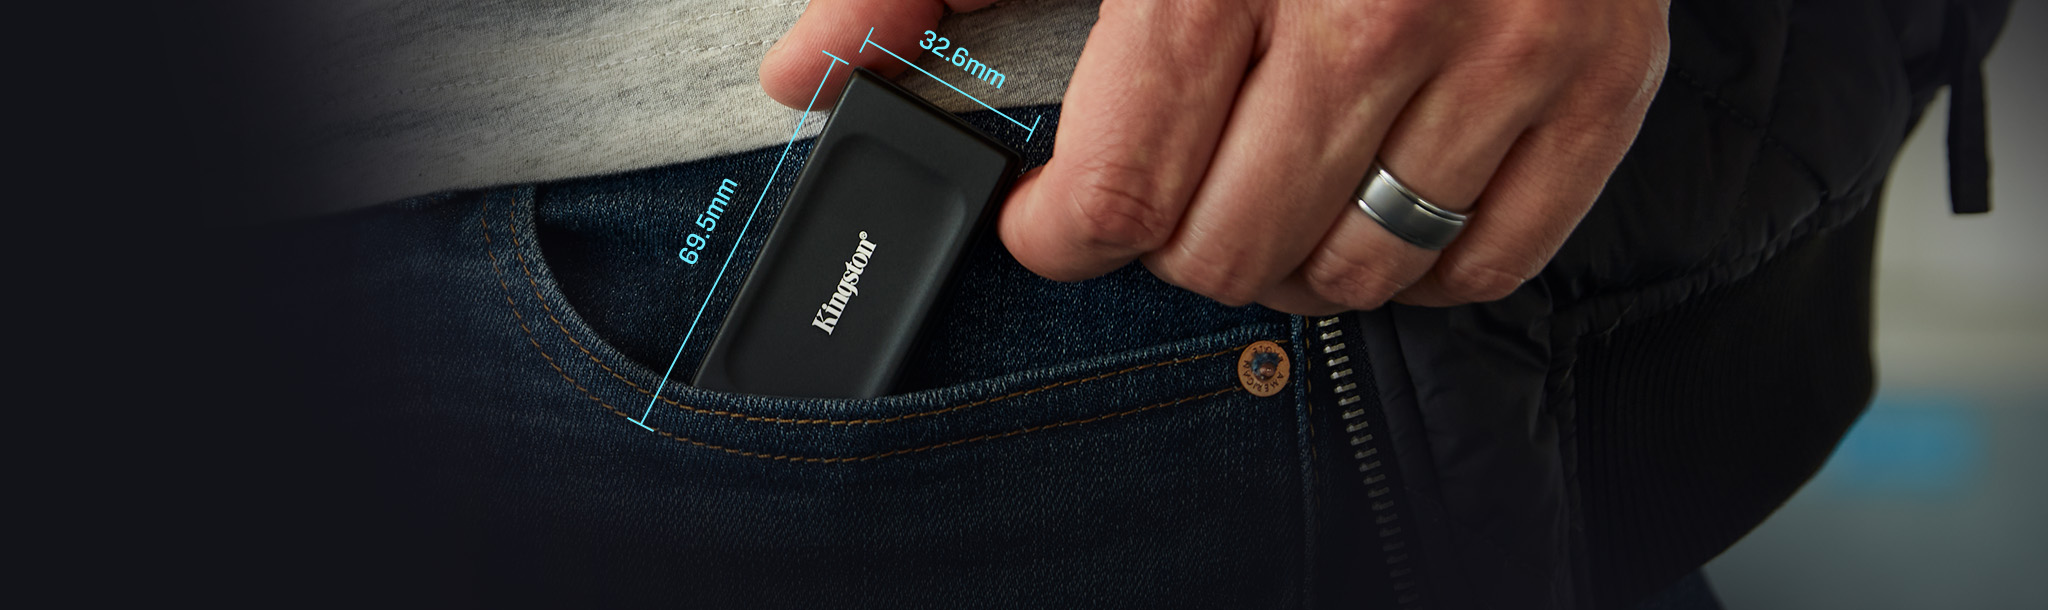 Tangan memegang SSD portabel XS1000 dengan tampilan dimensi: 69,54 x 32,58 x 13,5mm